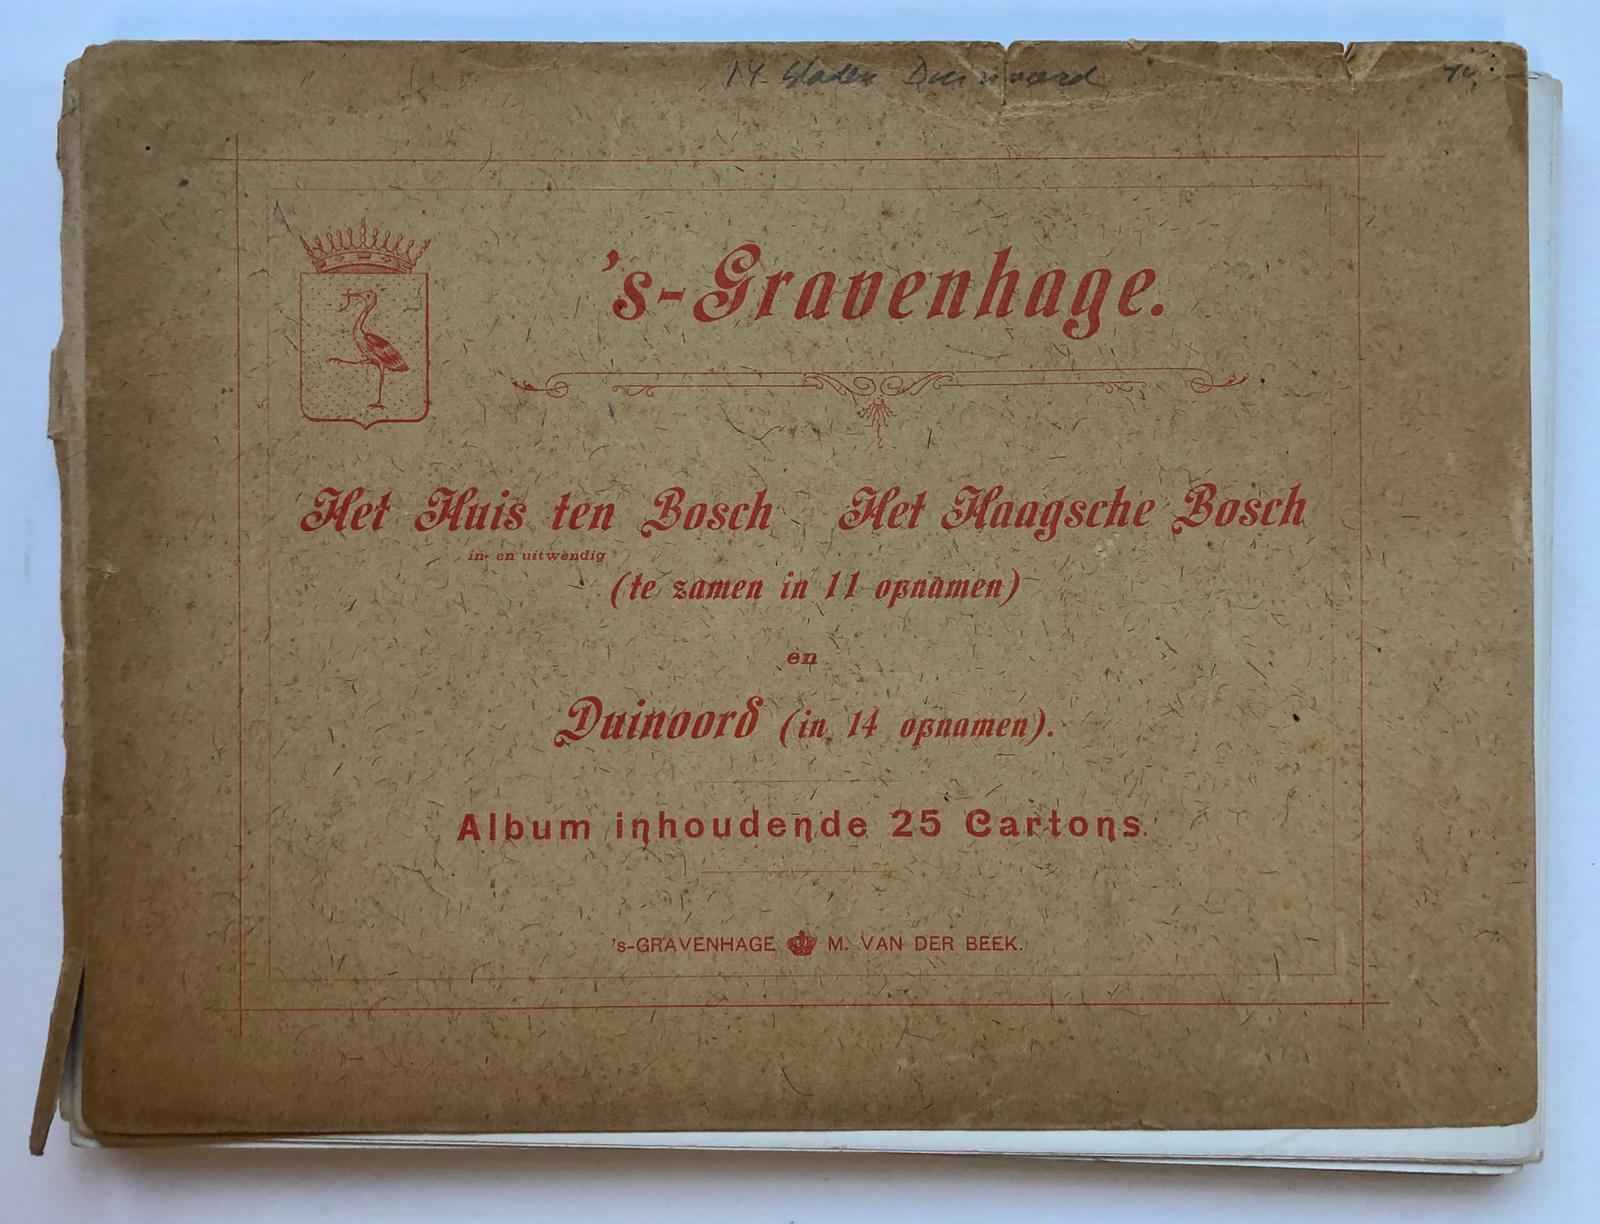  - GRAVENHAGE, DUINOORD--- Duinoord te 's-Gravenhage, 14 foto's op karton van deze Haagse wijk, uitg. M. v.d. Beek te 's-gravenhage, 19x26 cm., ca. 1900.